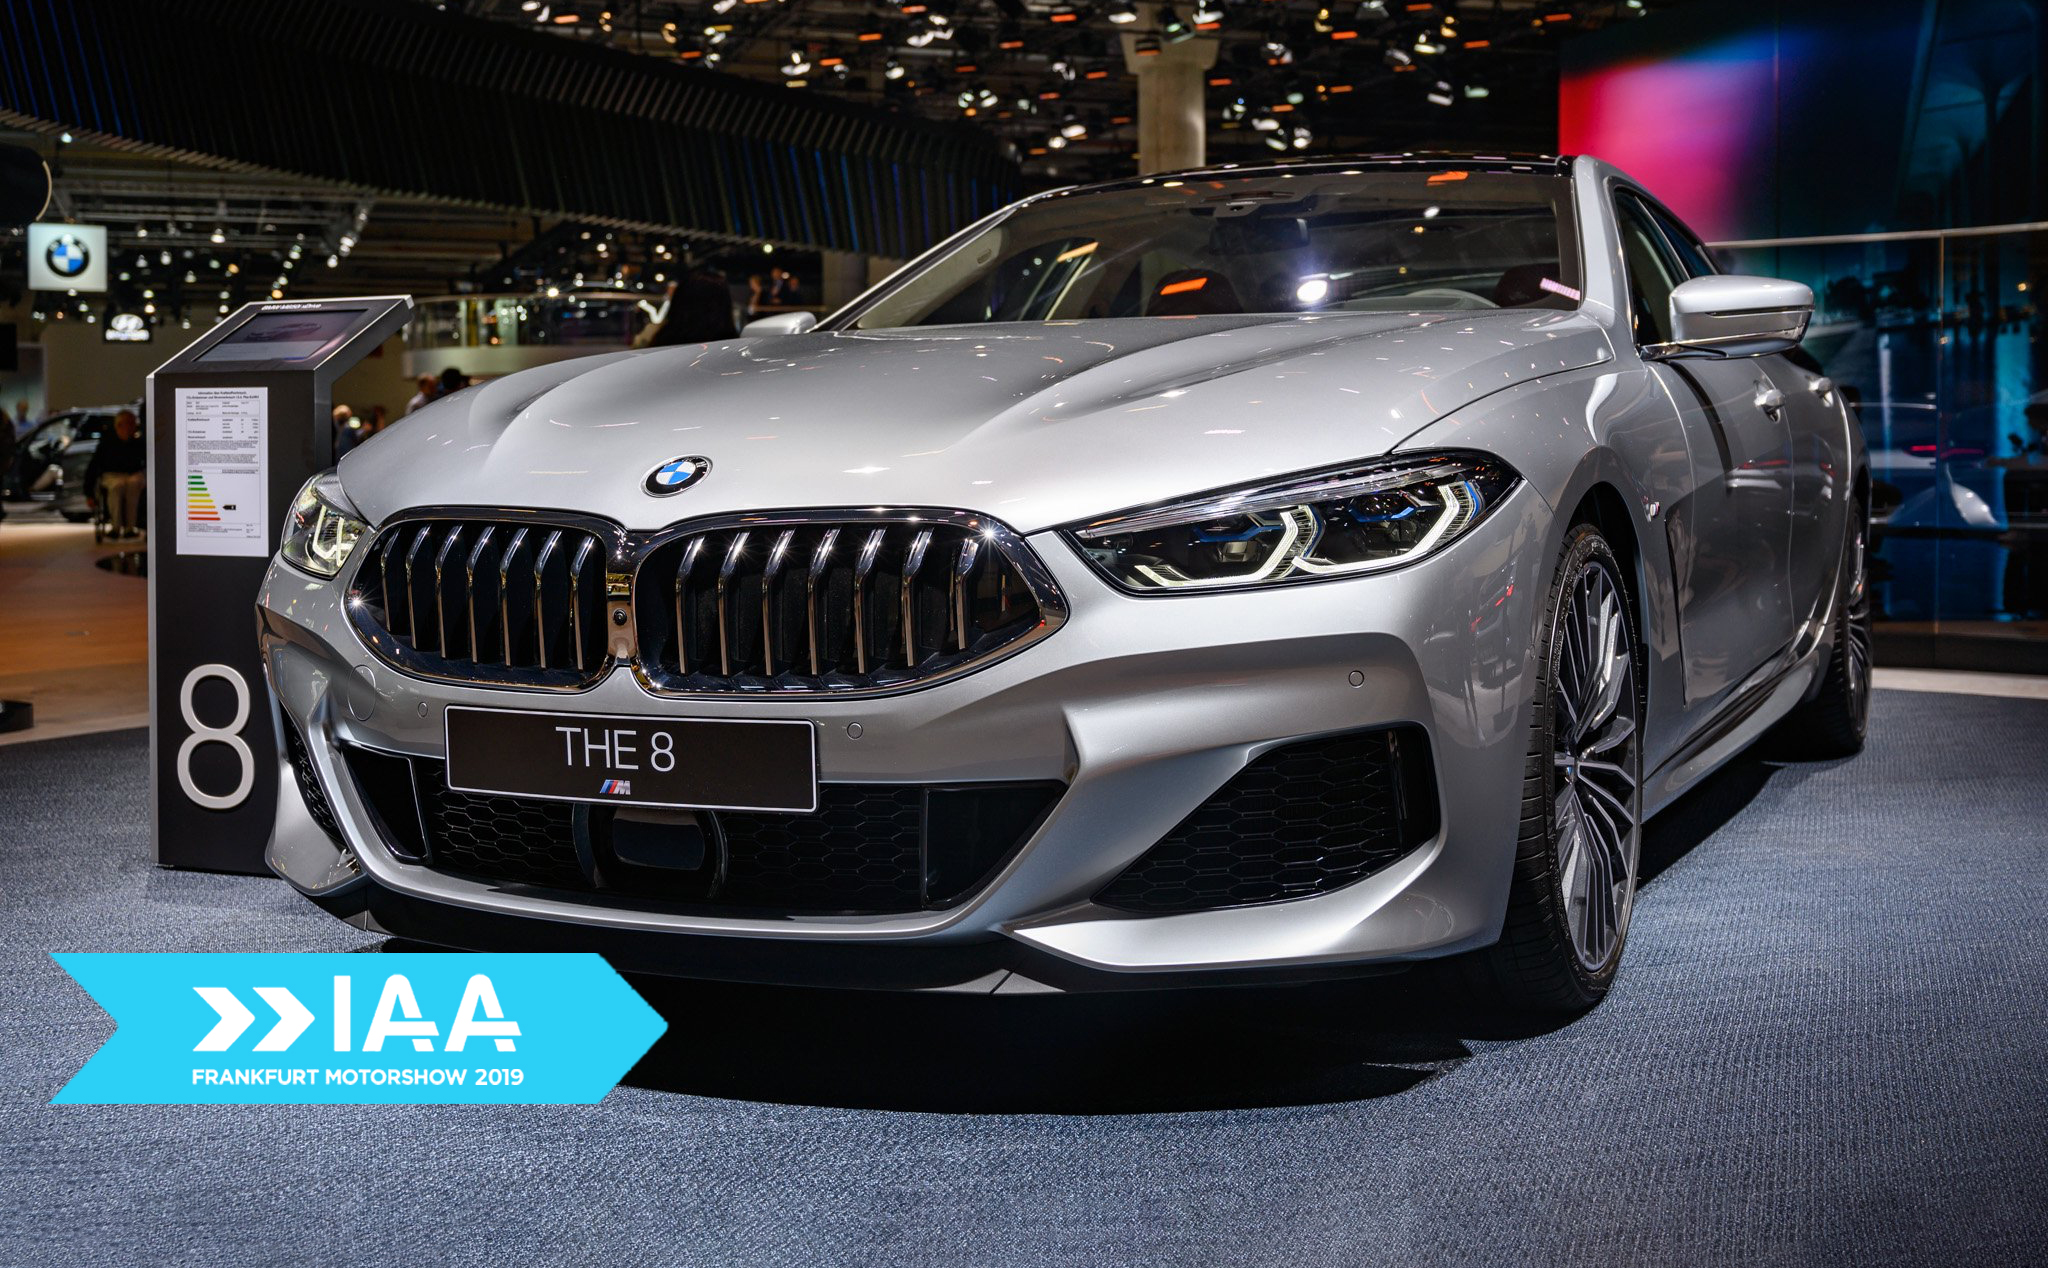 #IAA - Trên tay BMW M850i Gran Coupe